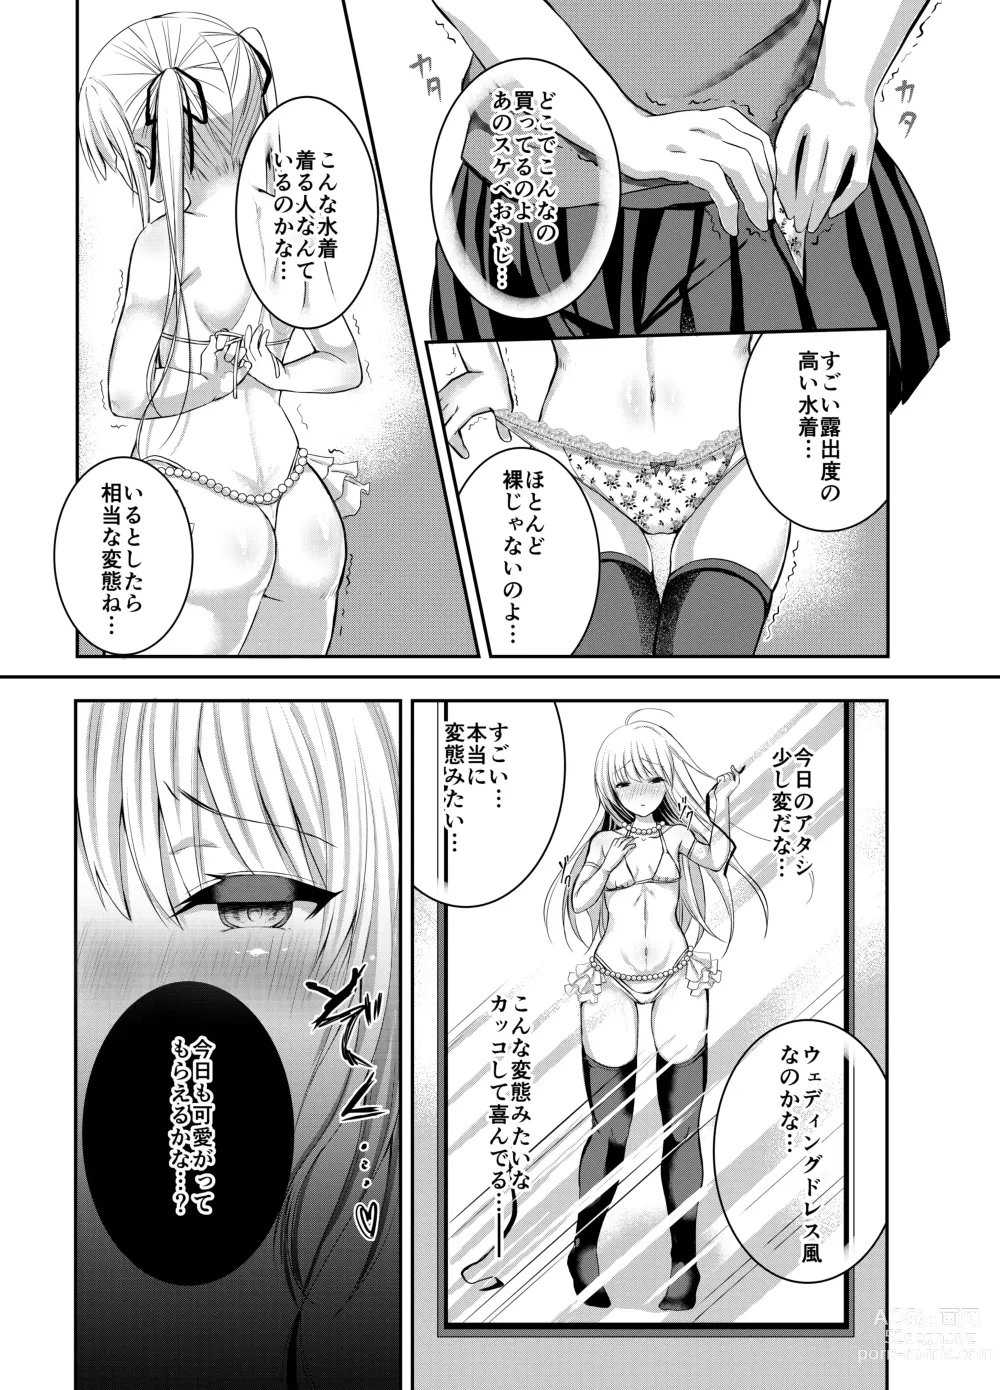 Page 11 of doujinshi Saeman 3